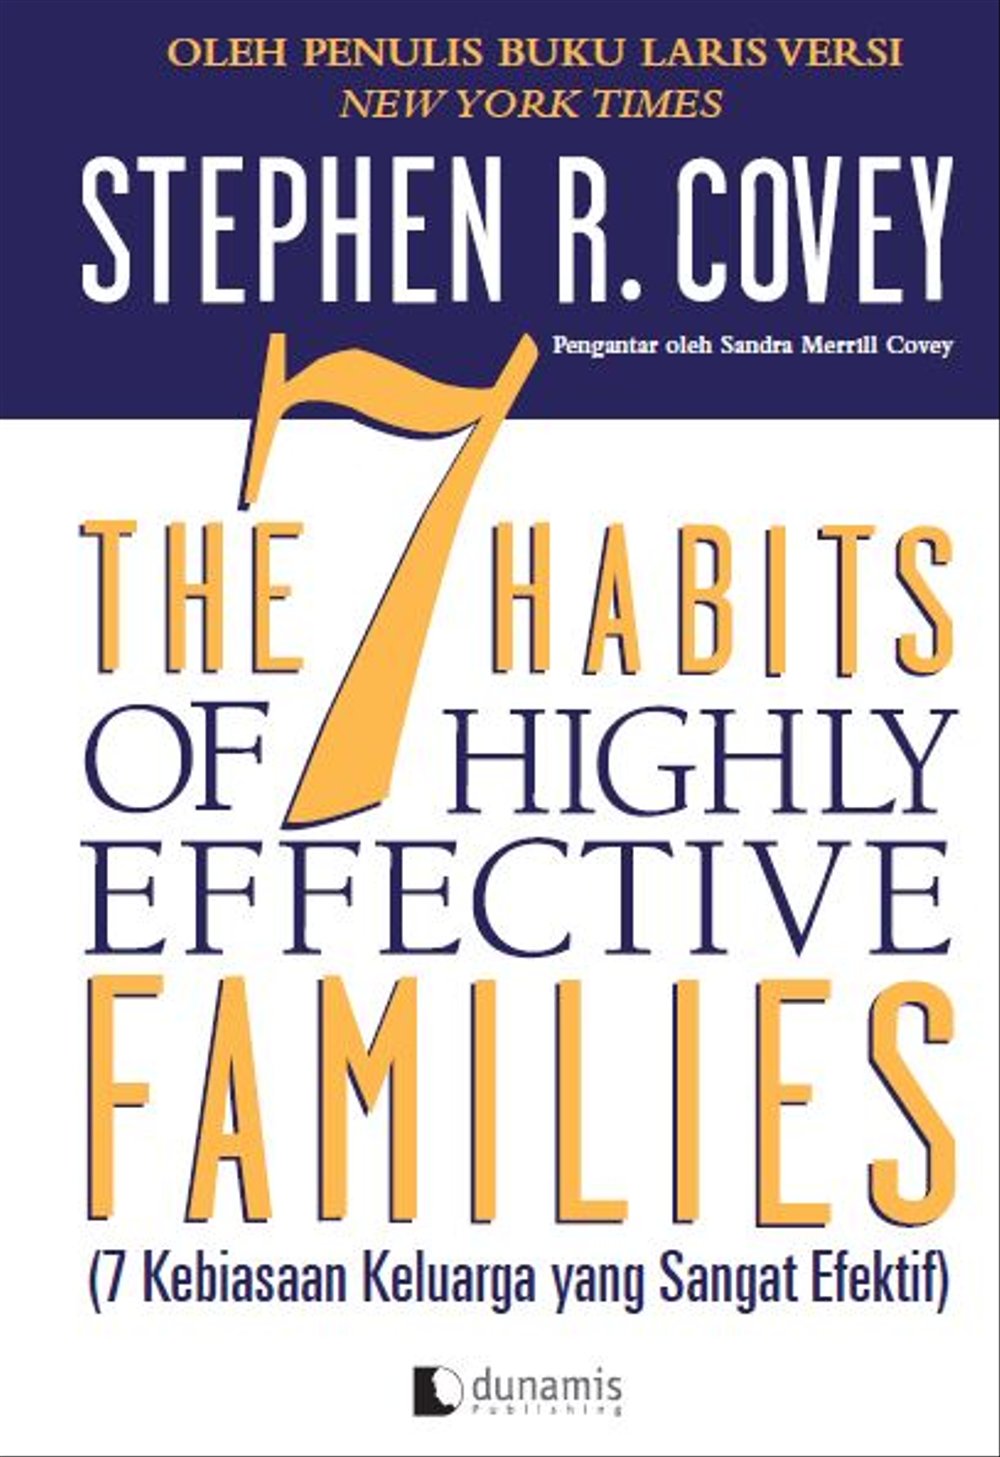 The 7 habits of highly effective families (7 kebiasaan keluarga yang sangat efektif): membangun budaya keluarga yang harmonis di dunia yang bergejolak